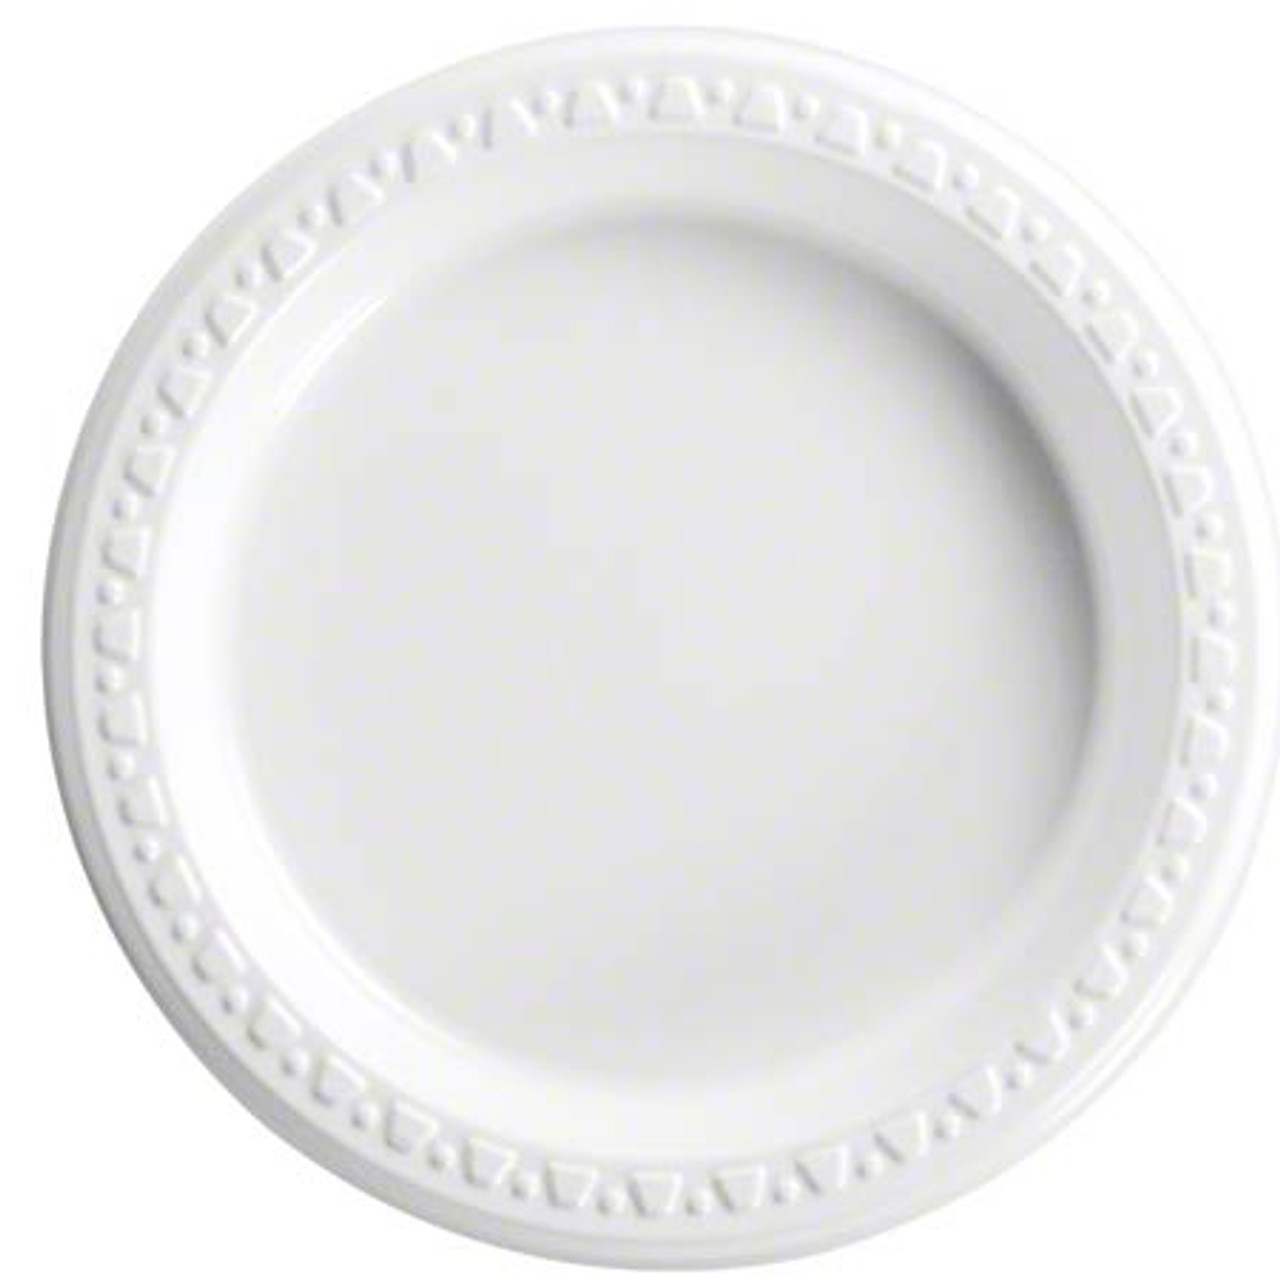 Callico 81206 6" White Plastic Disposable Plate